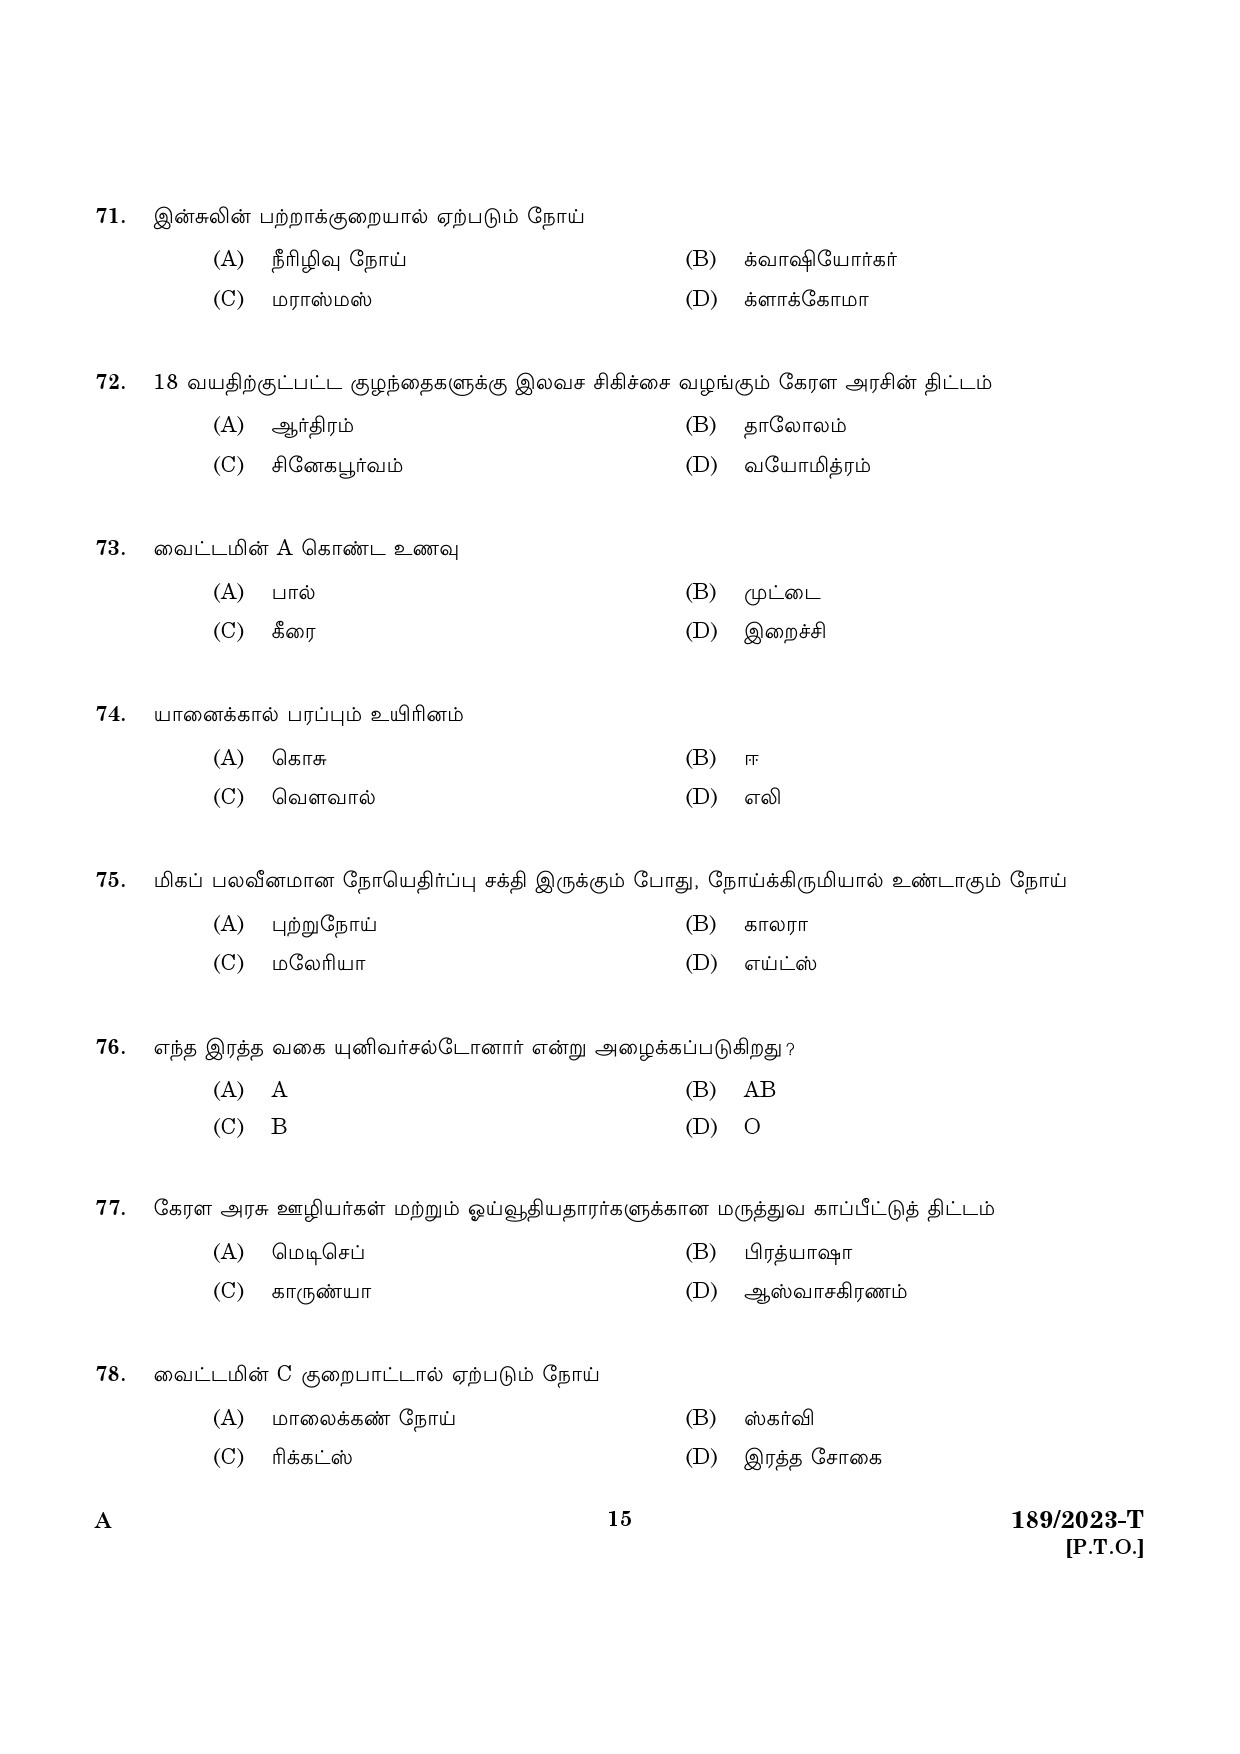 KPSC LGS Tamil Exam 2023 Code 1892023 T 13